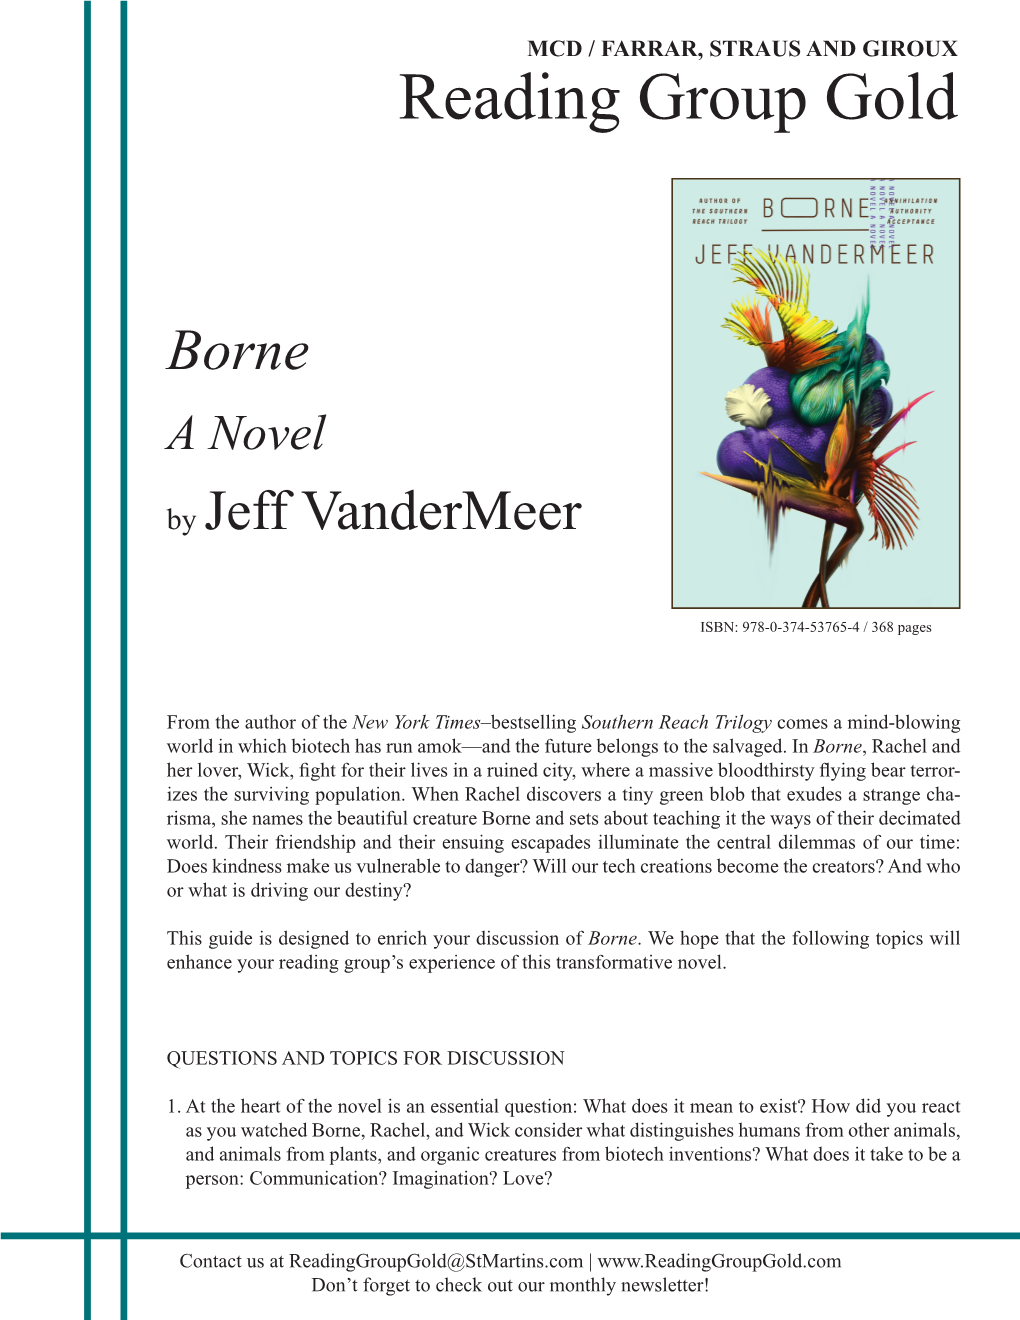 Borne a Novel by Jeff Vandermeer